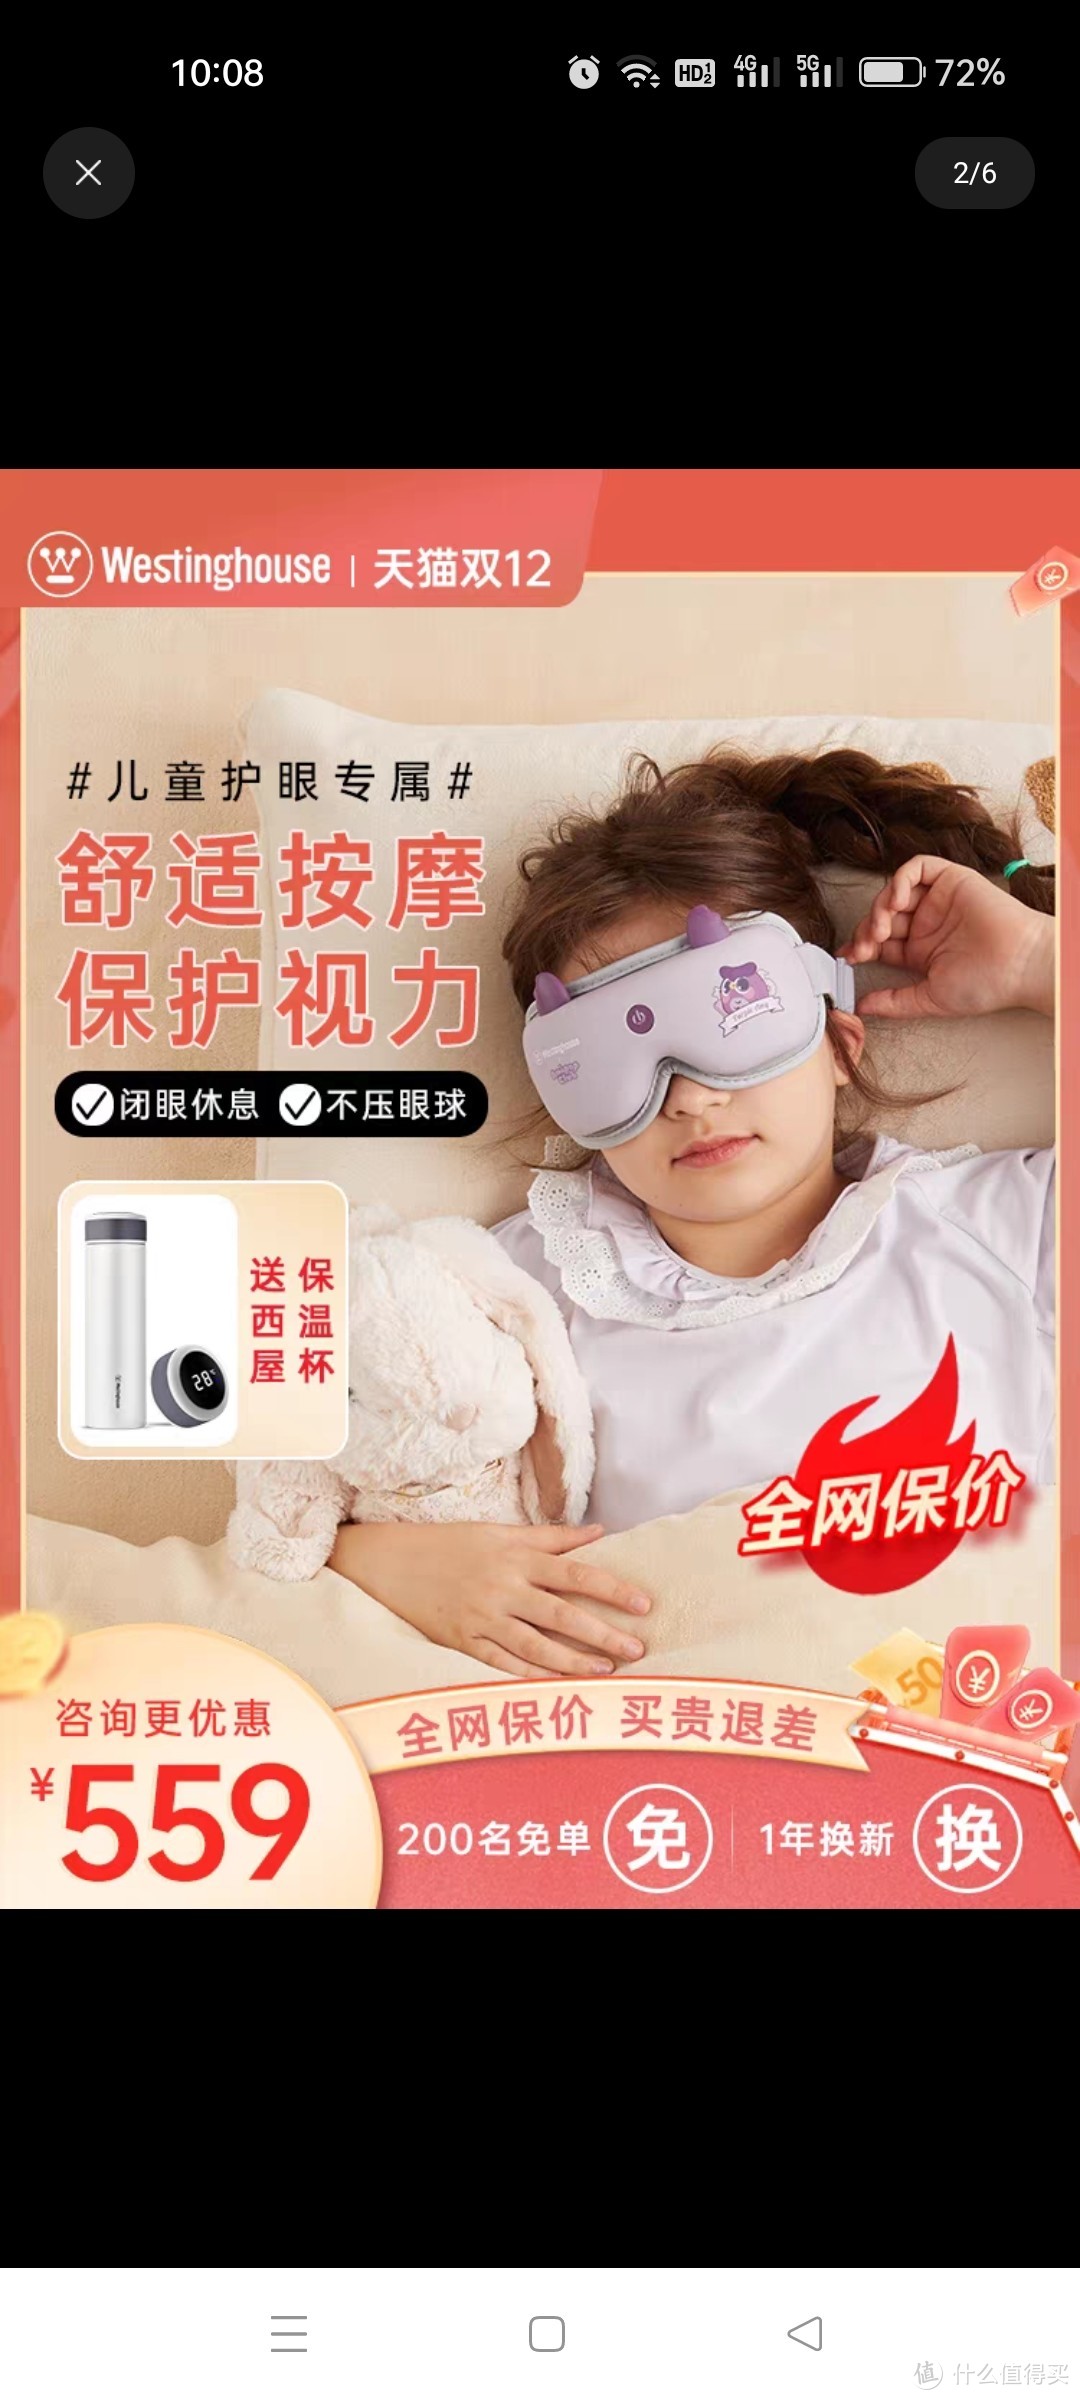  西屋眼部按摩仪儿童护眼仪中学生保护视力眼睛按摩器智能热敷眼罩